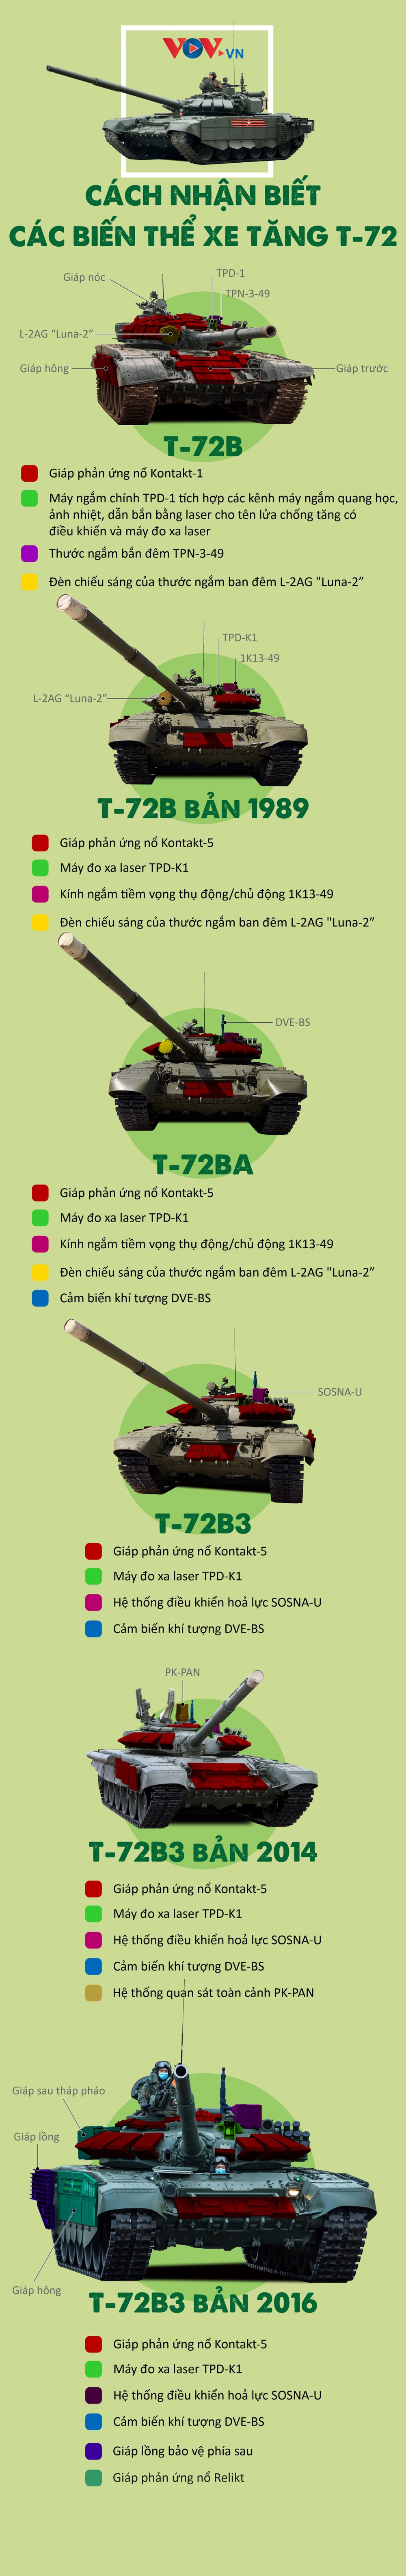 Đặc điểm nhận biết một số biến thể xe tăng T-72 - Ảnh 1.